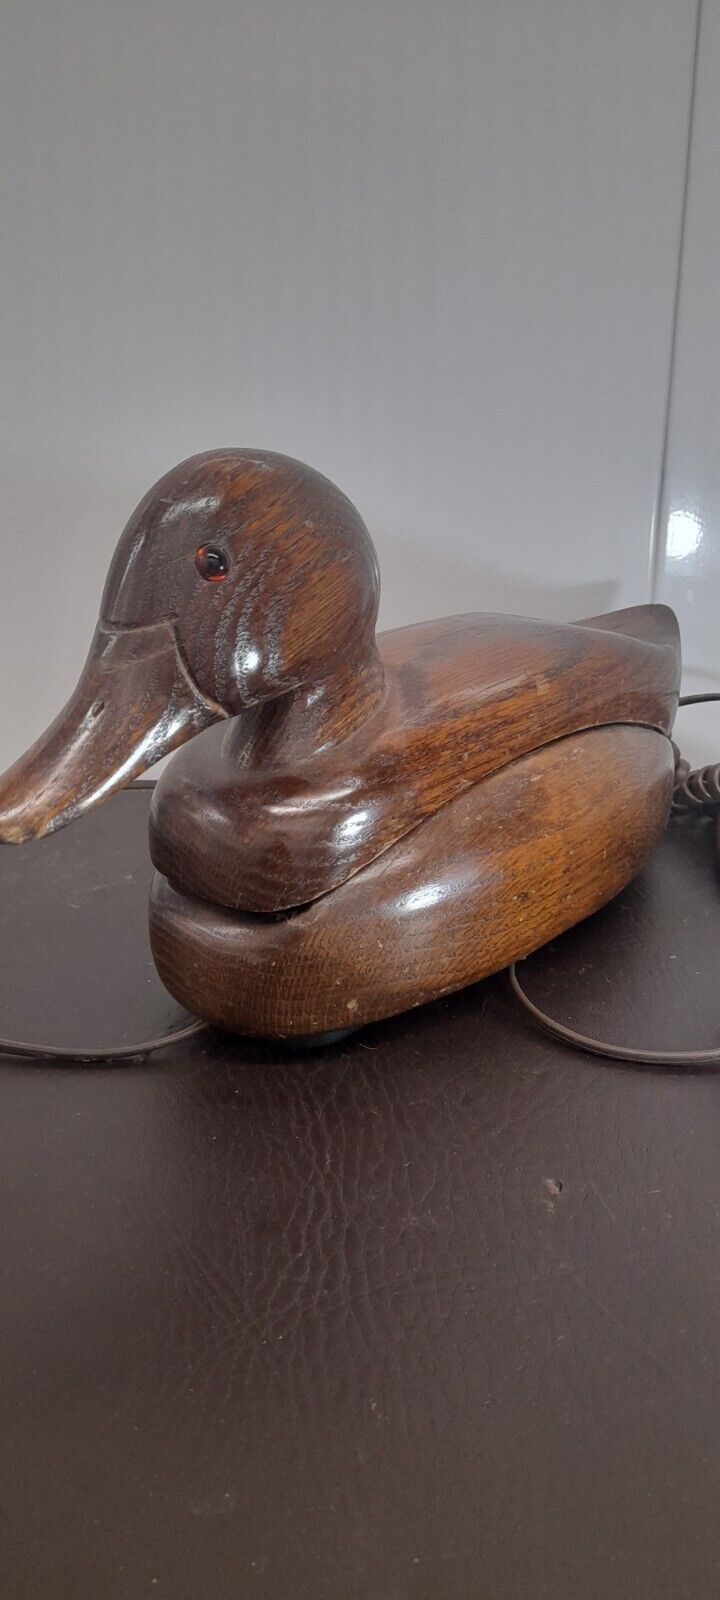  Wood Duck Corded Phone  Vintage 